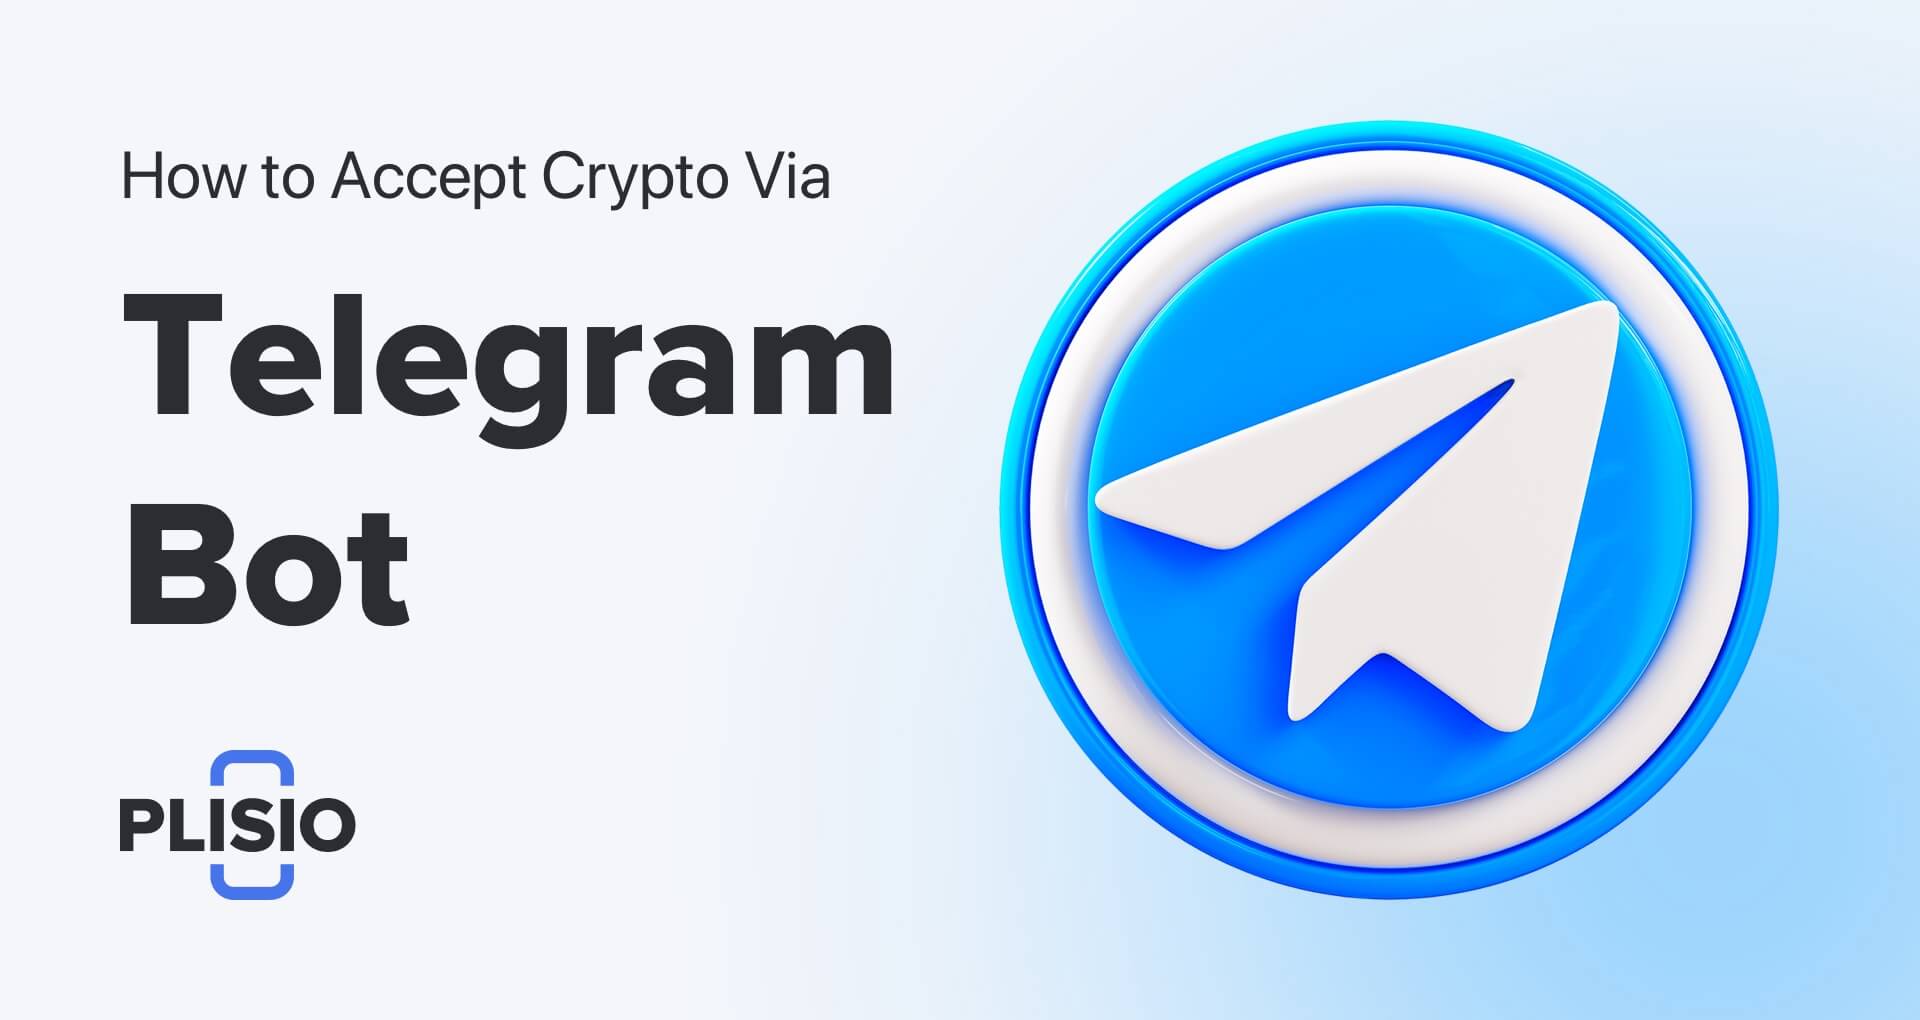 So akzeptieren Sie Krypto ganz einfach per Telegram Bot